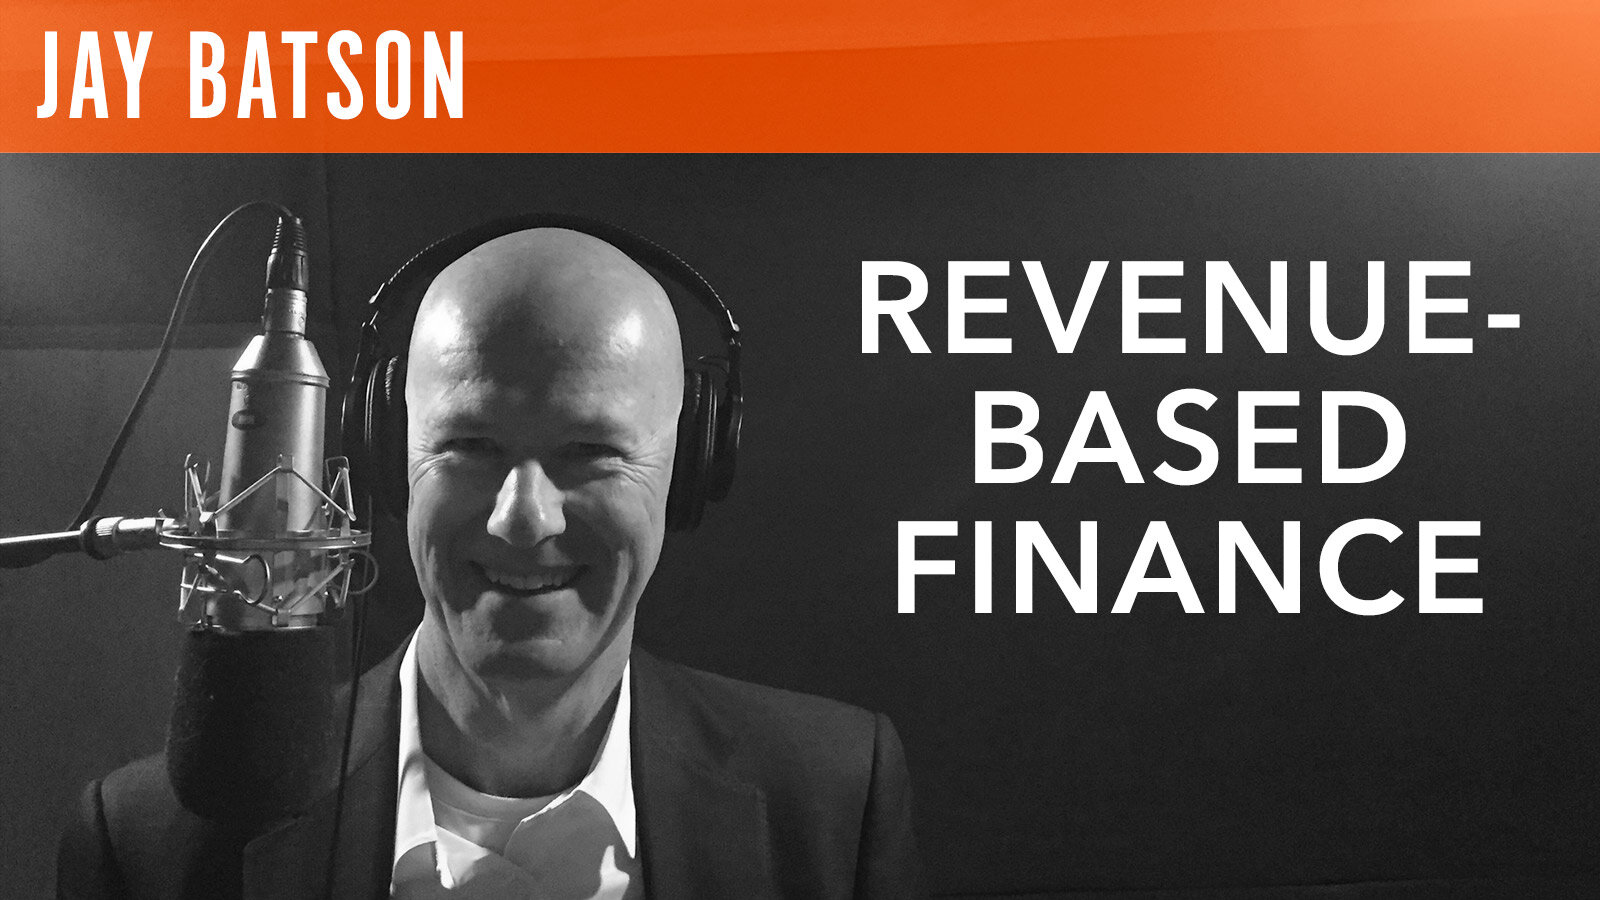 Jay Batson, "Revenue-Based Finance"